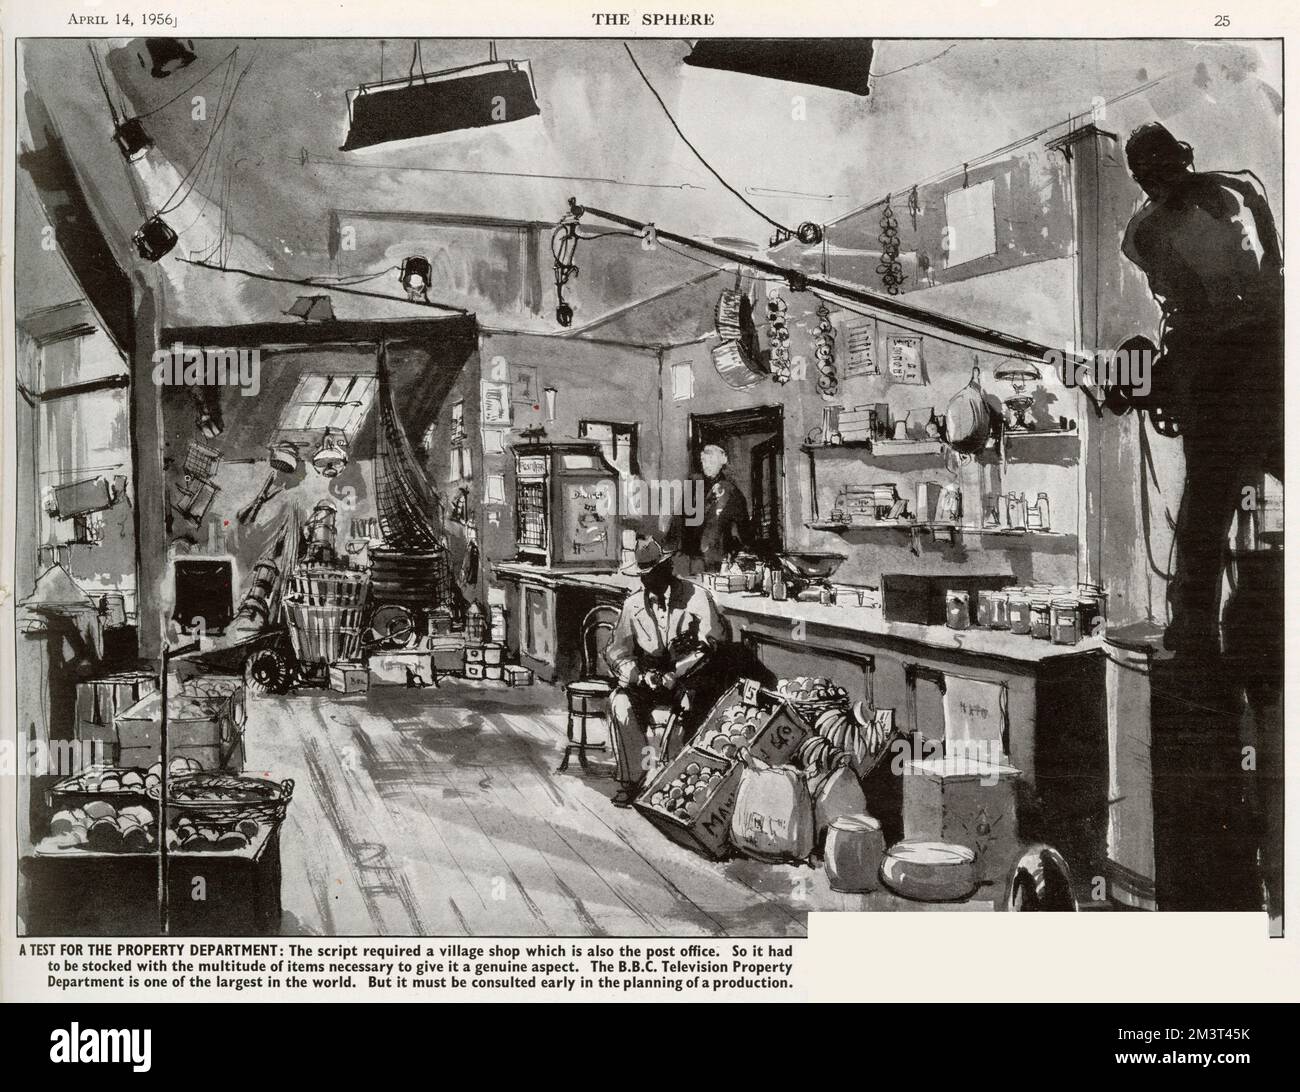 Produktion eines TV-Stücks auf der BBC, in dem gezeigt wird, wie ein Dorfladen mit Hilfe der BBC-Immobilienabteilung nachgebildet wird, um eine authentische Szene zu erzeugen. Stockfoto